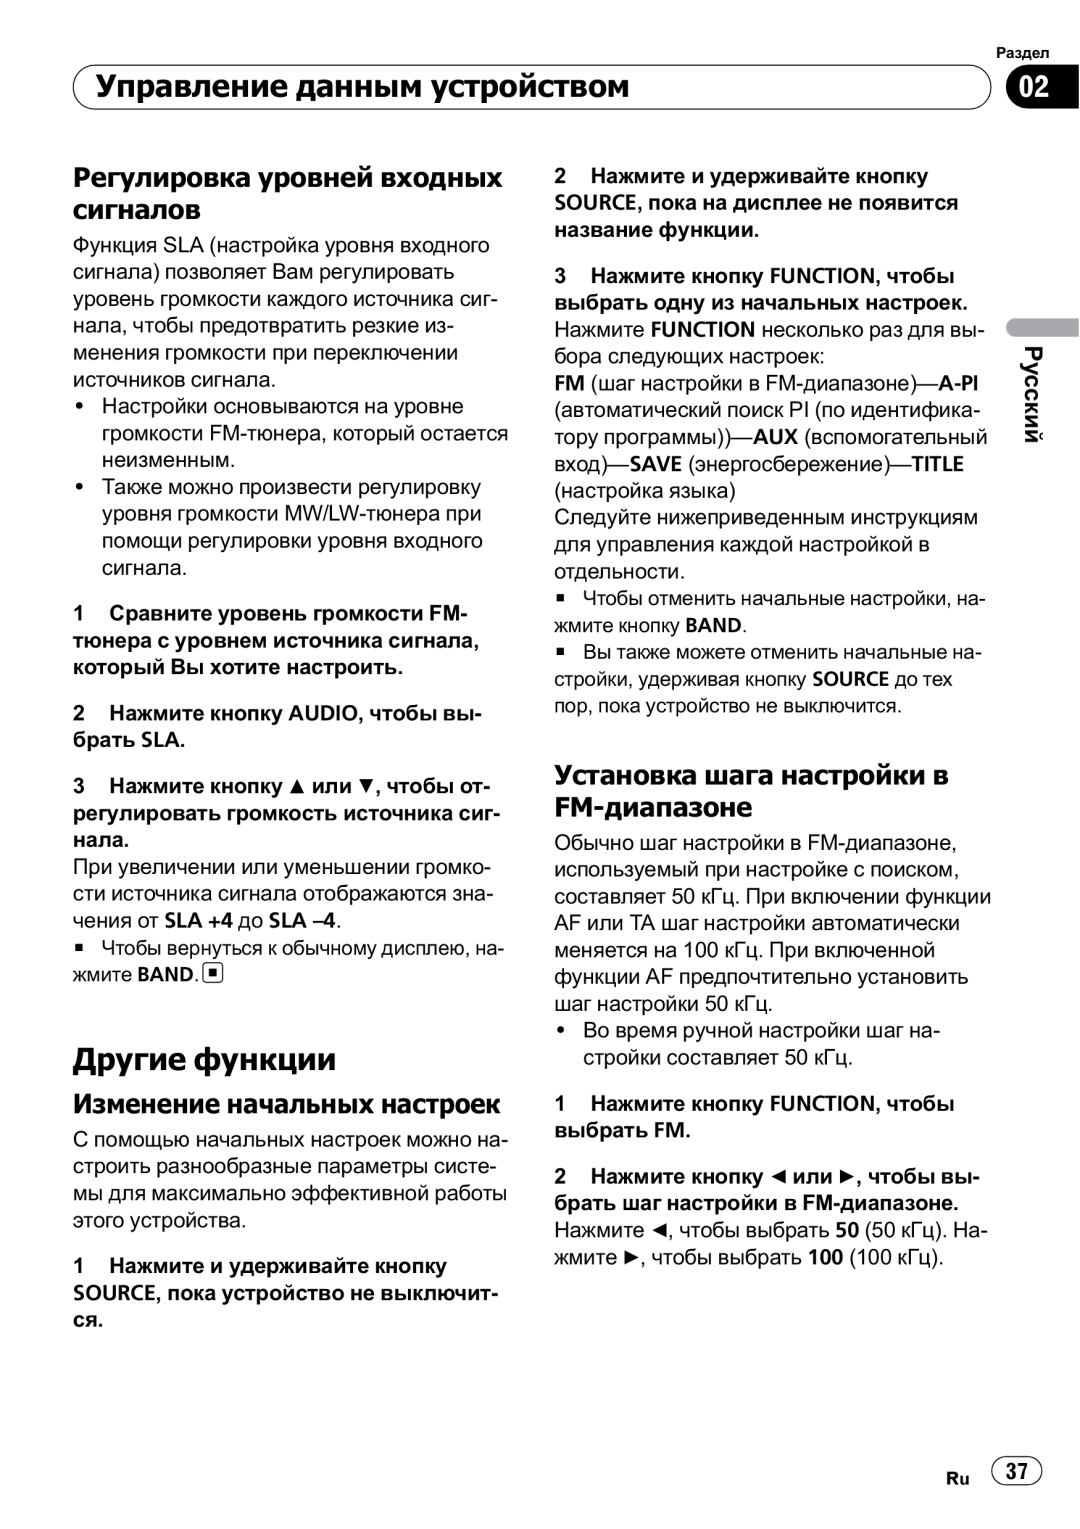 Pioneer DEH-200MP owner manual Другие функции, Регулировка уровней входных сигналов, Изменение начальных настроек, Русский 